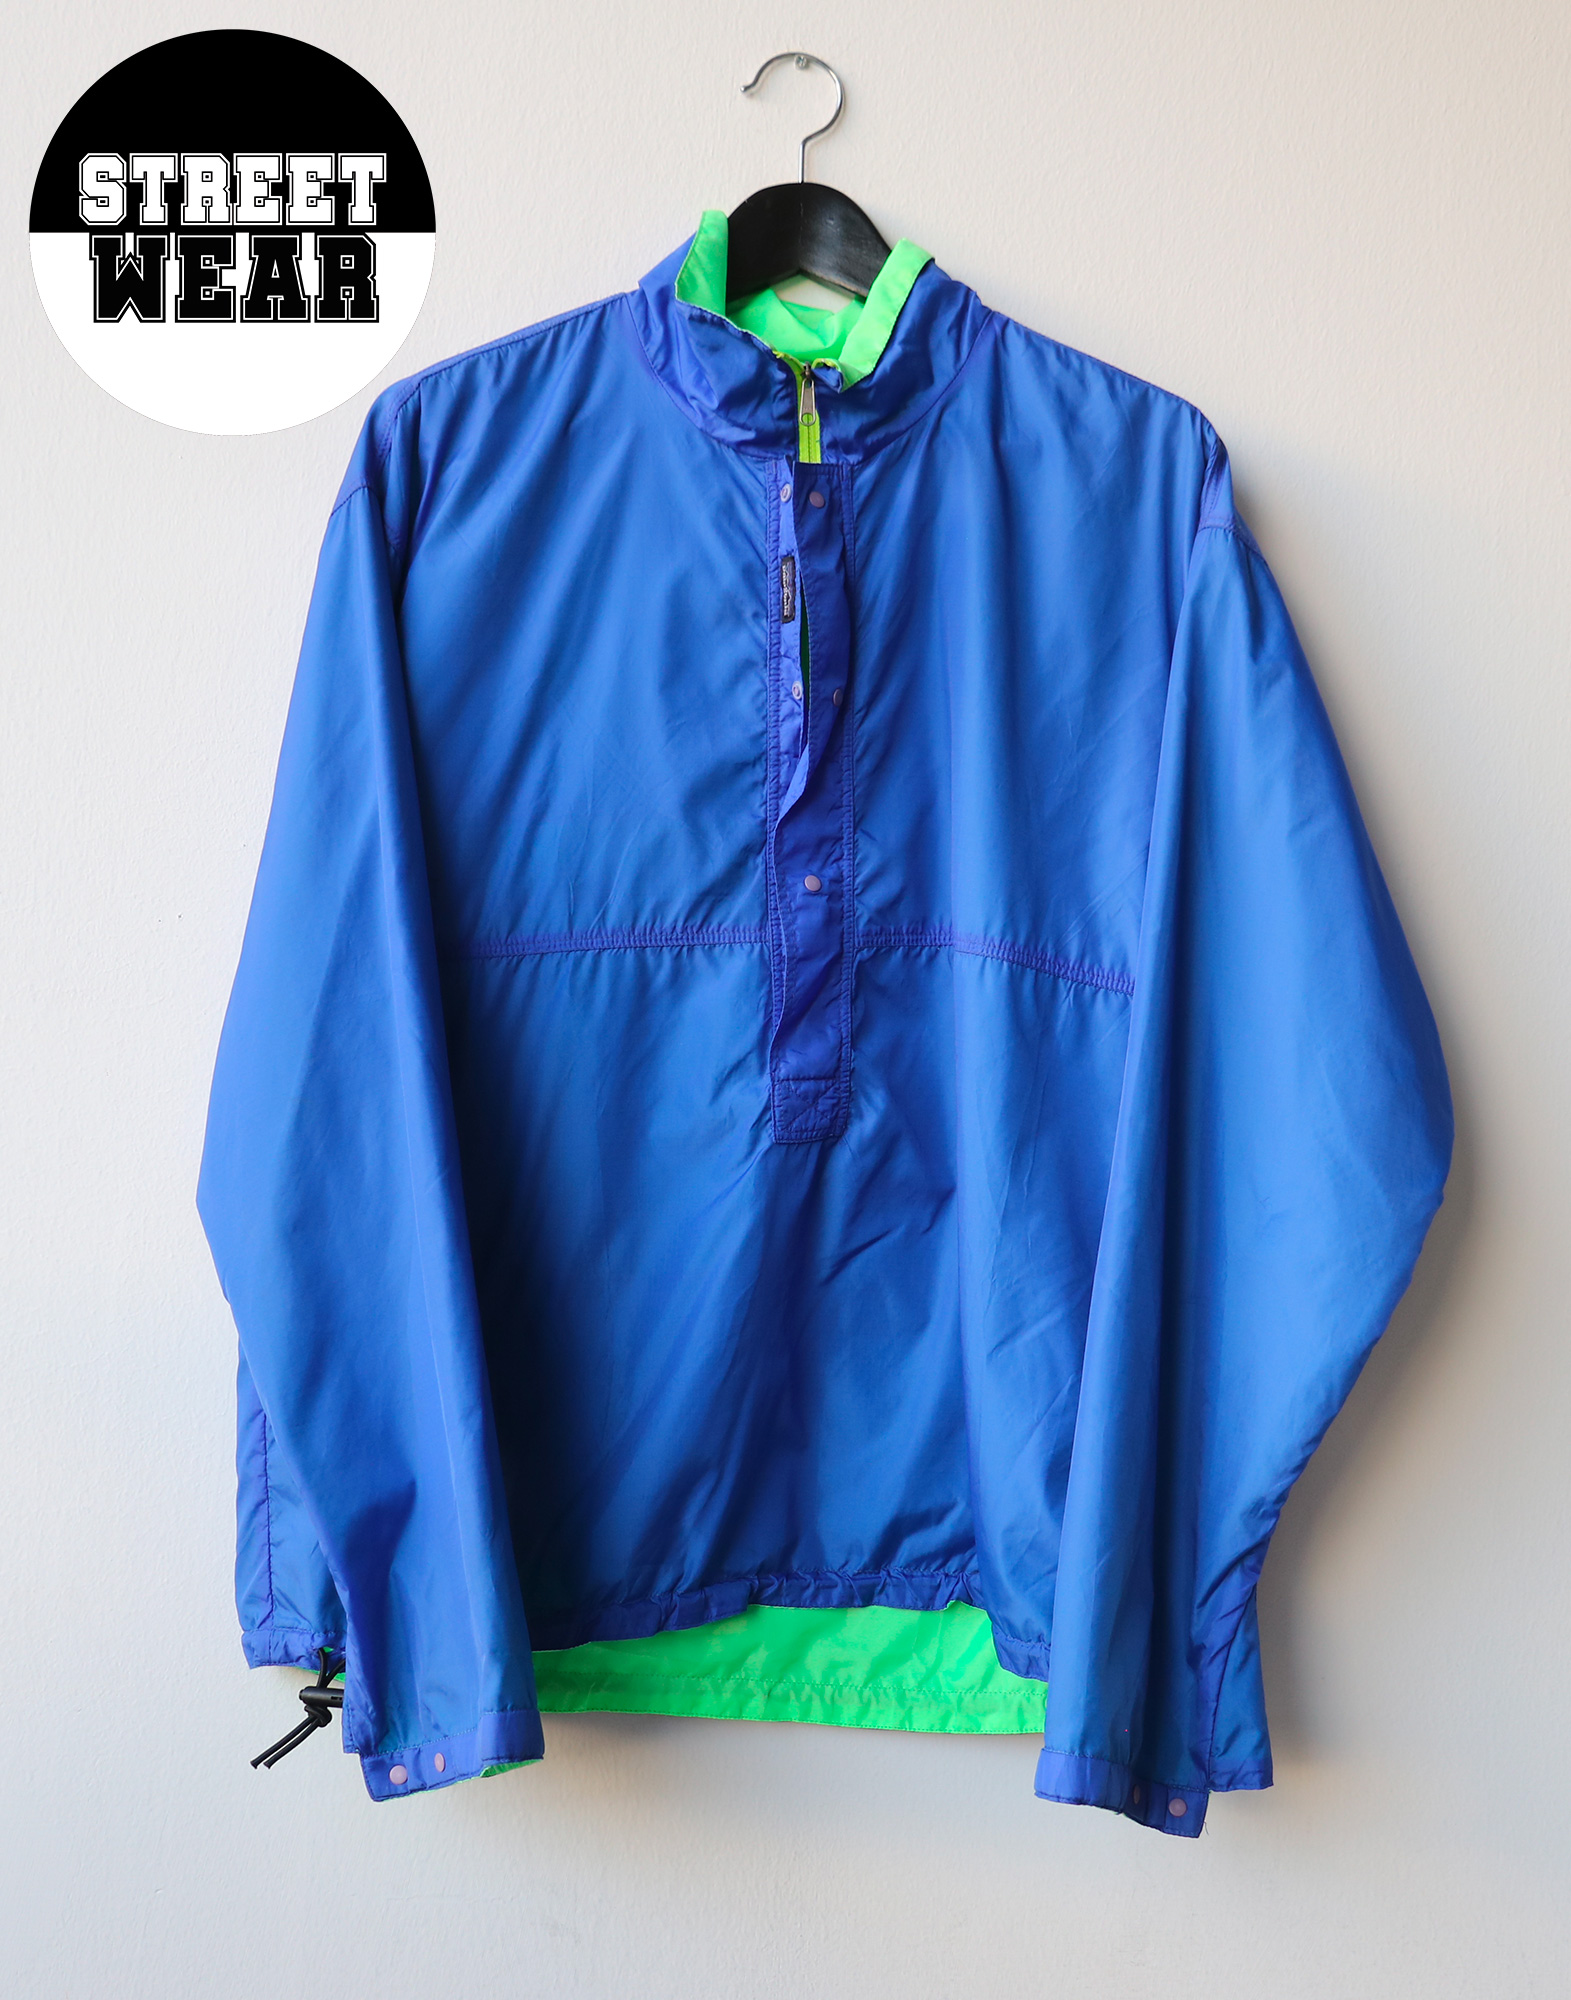 Patagonia - Reversible windbreaker jacket